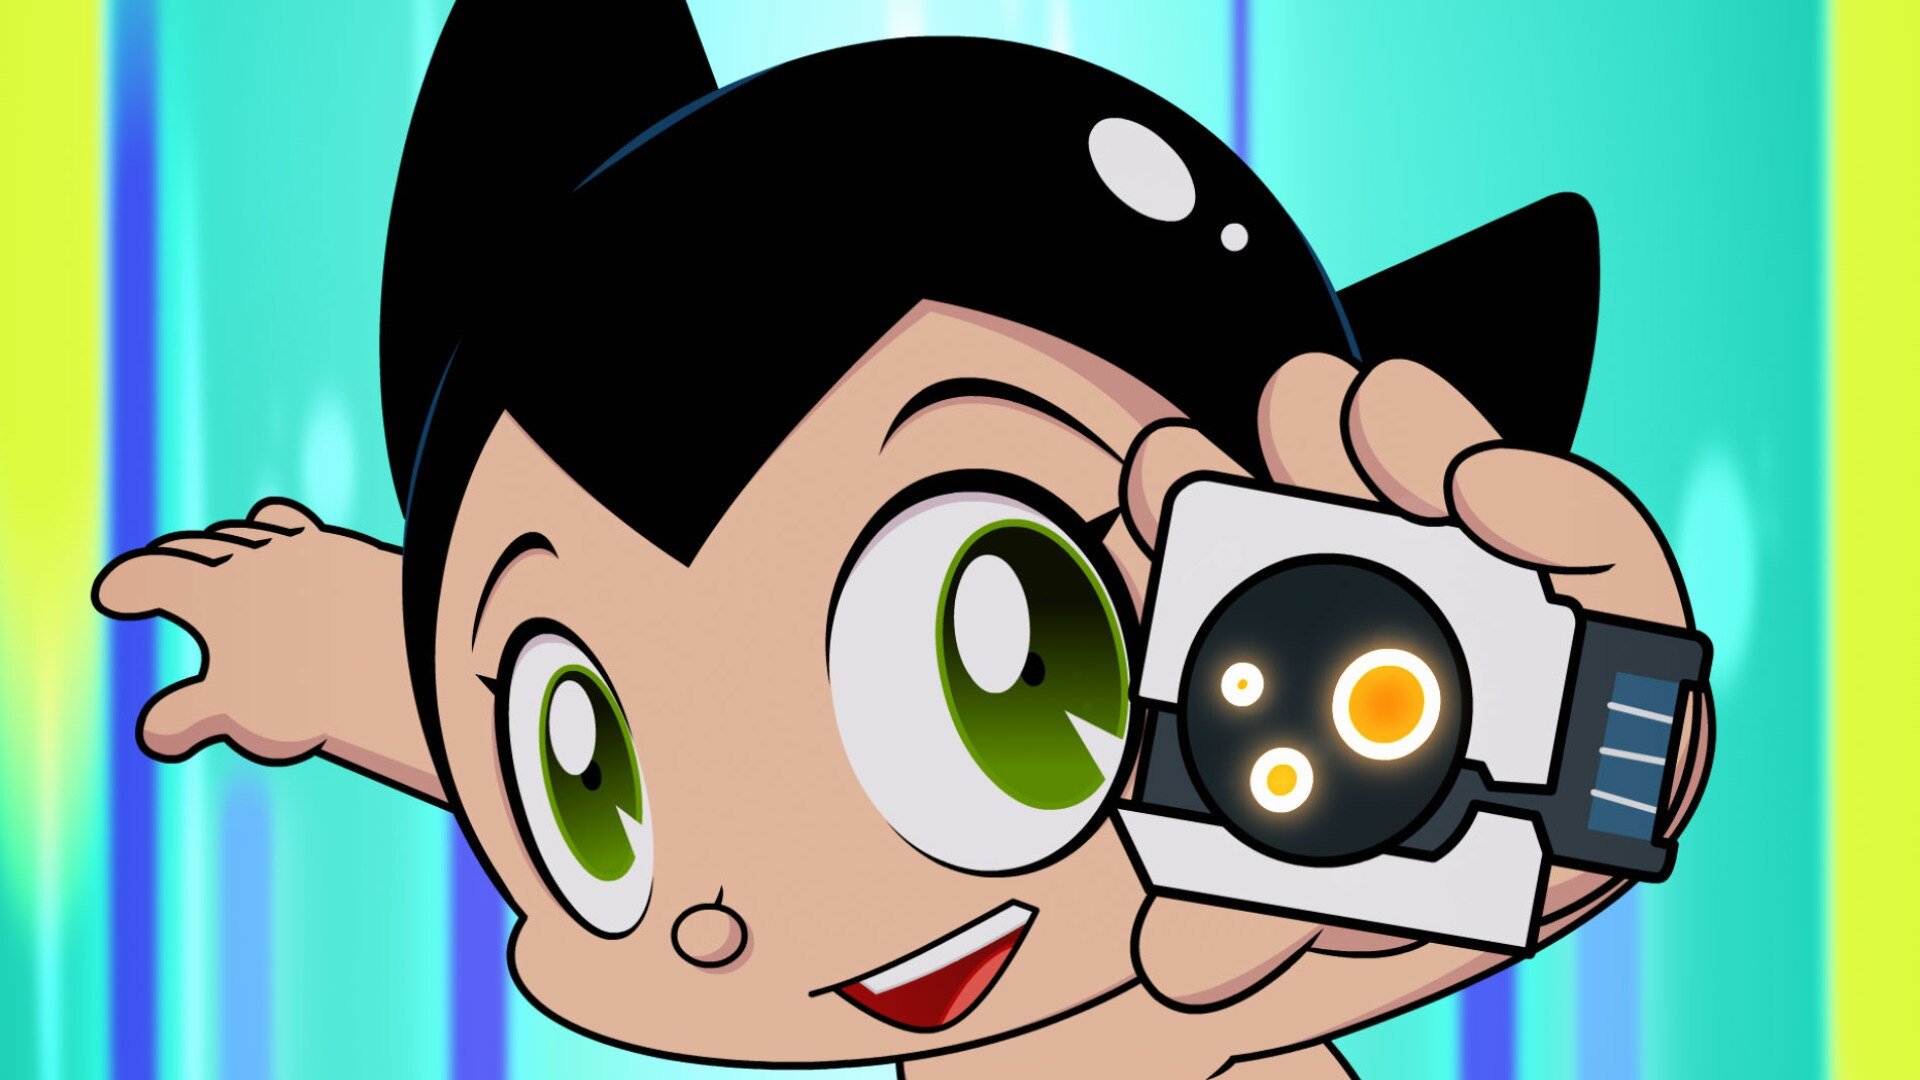 Watch Go Astro Boy Go Online Stream Full Episodes